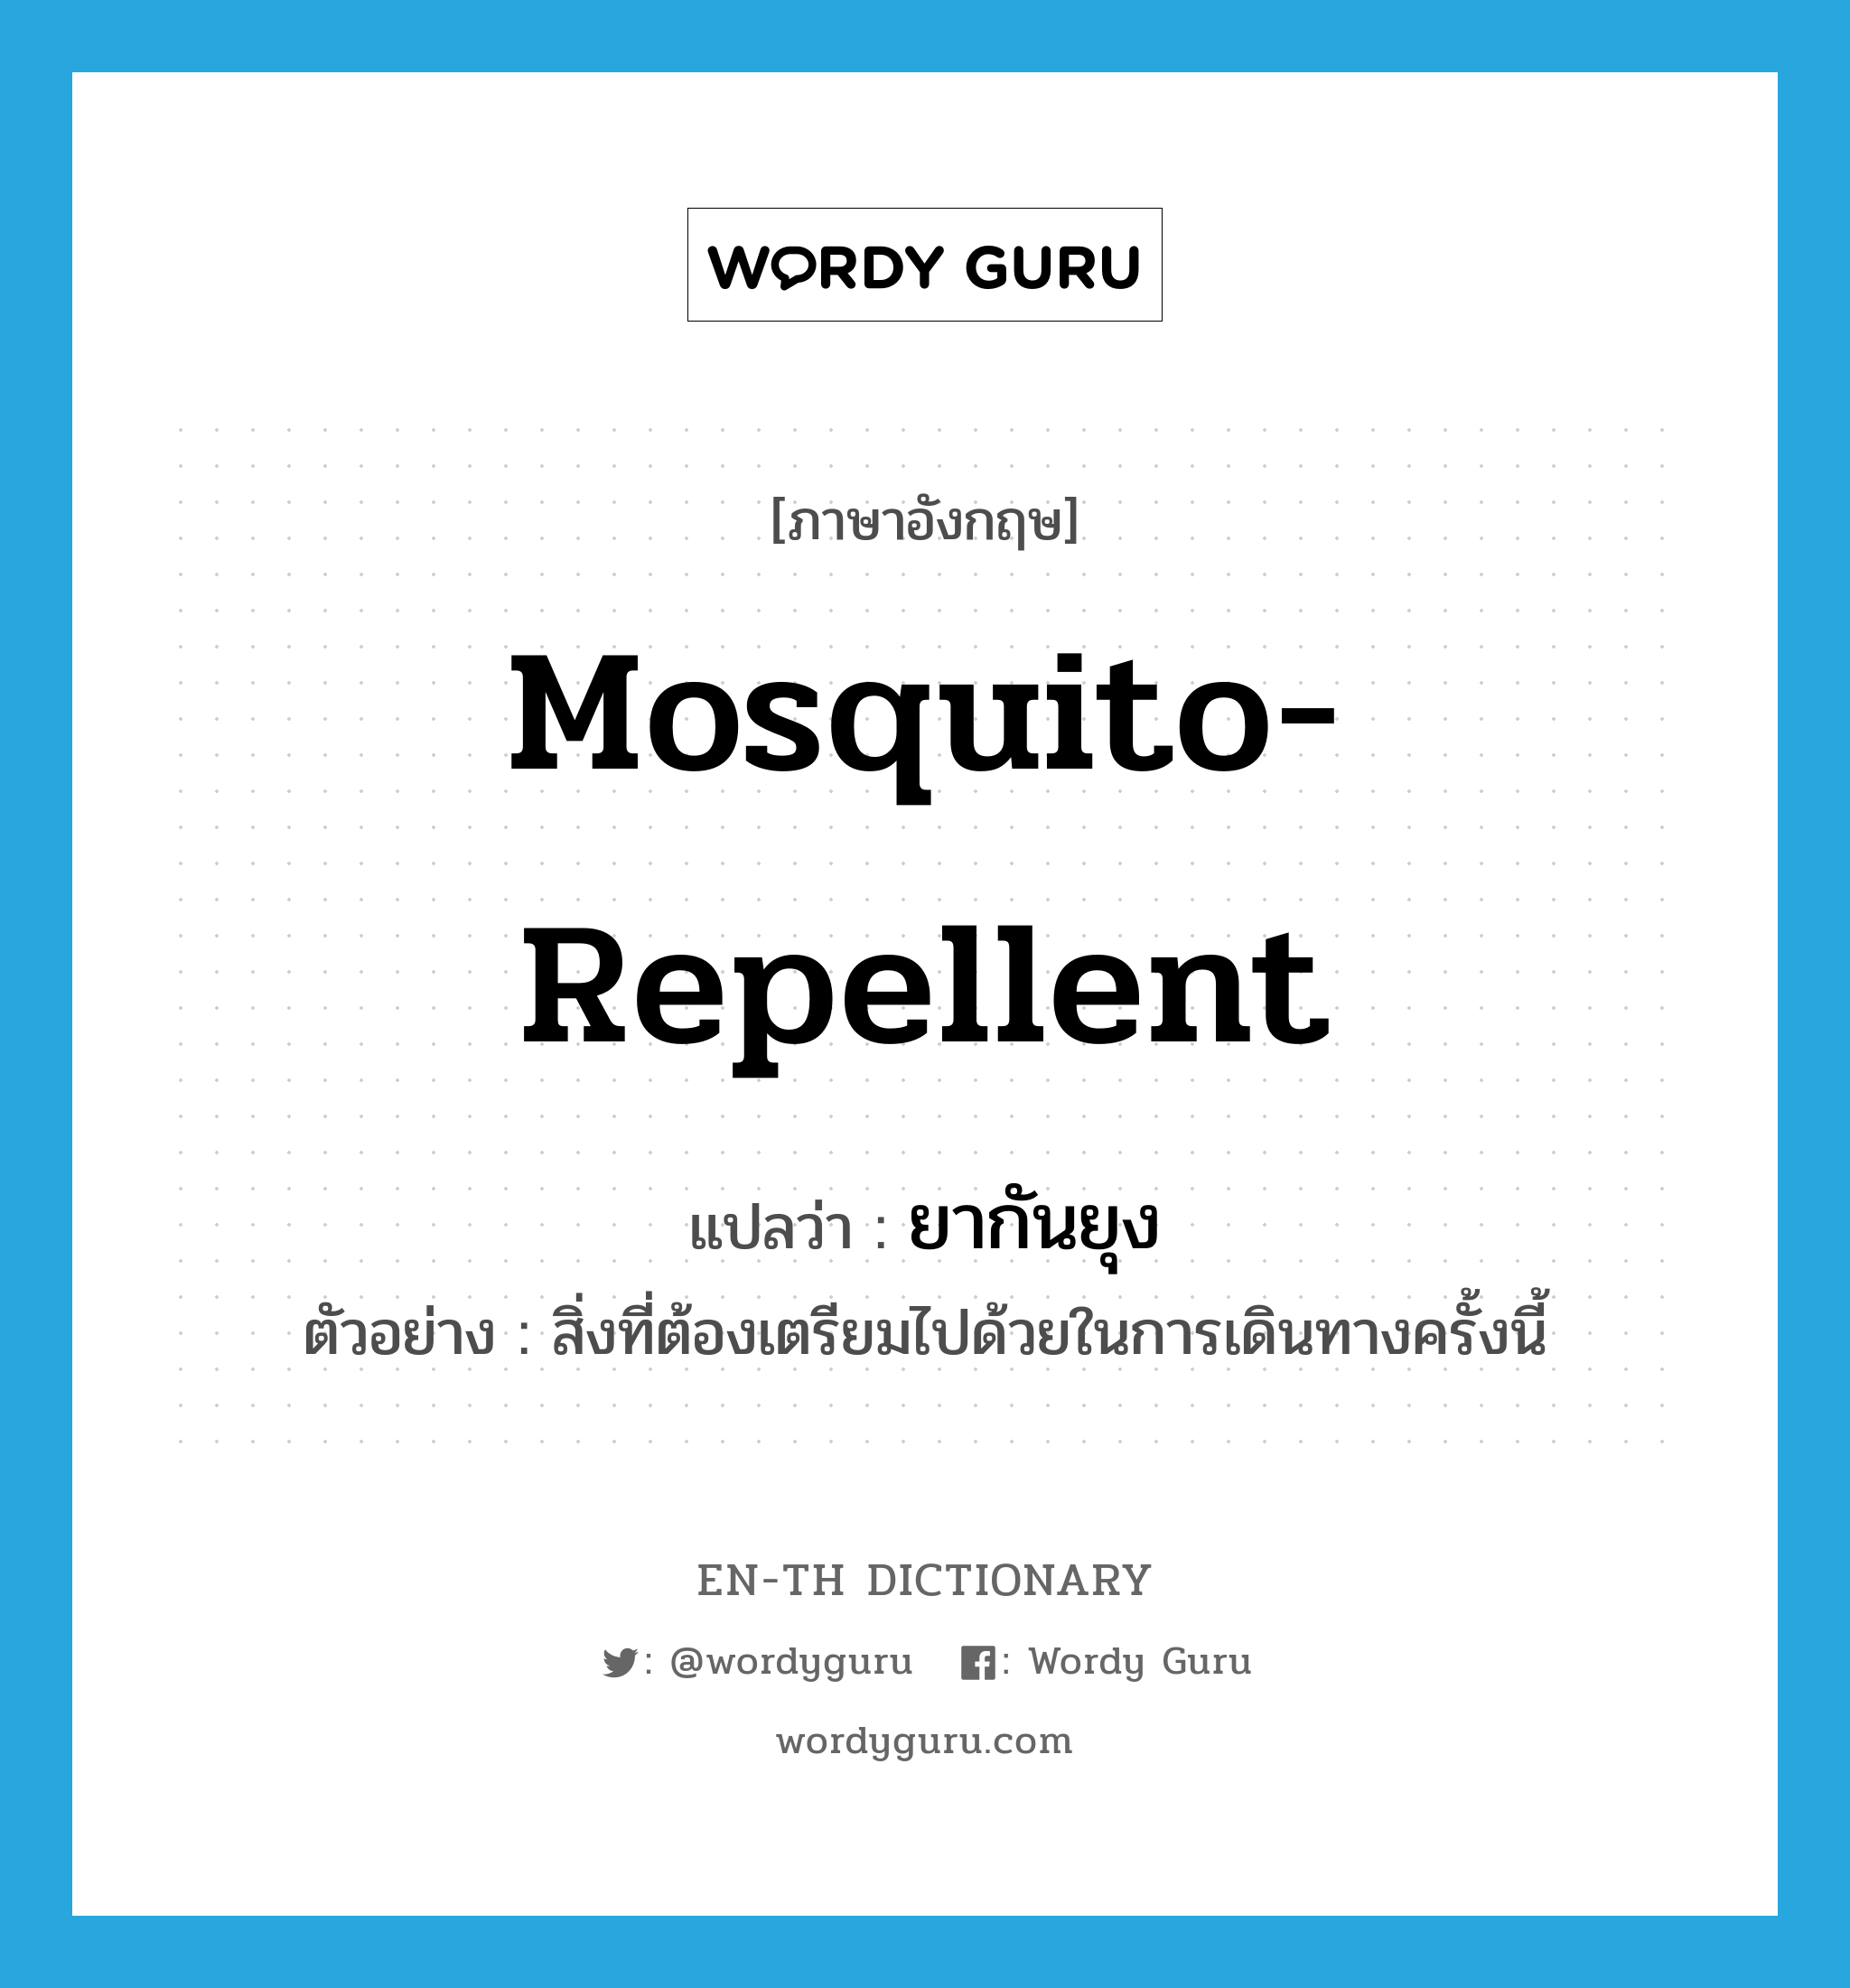 ยากันยุง ภาษาอังกฤษ?, คำศัพท์ภาษาอังกฤษ ยากันยุง แปลว่า mosquito-repellent ประเภท N ตัวอย่าง สิ่งที่ต้องเตรียมไปด้วยในการเดินทางครั้งนี้ หมวด N